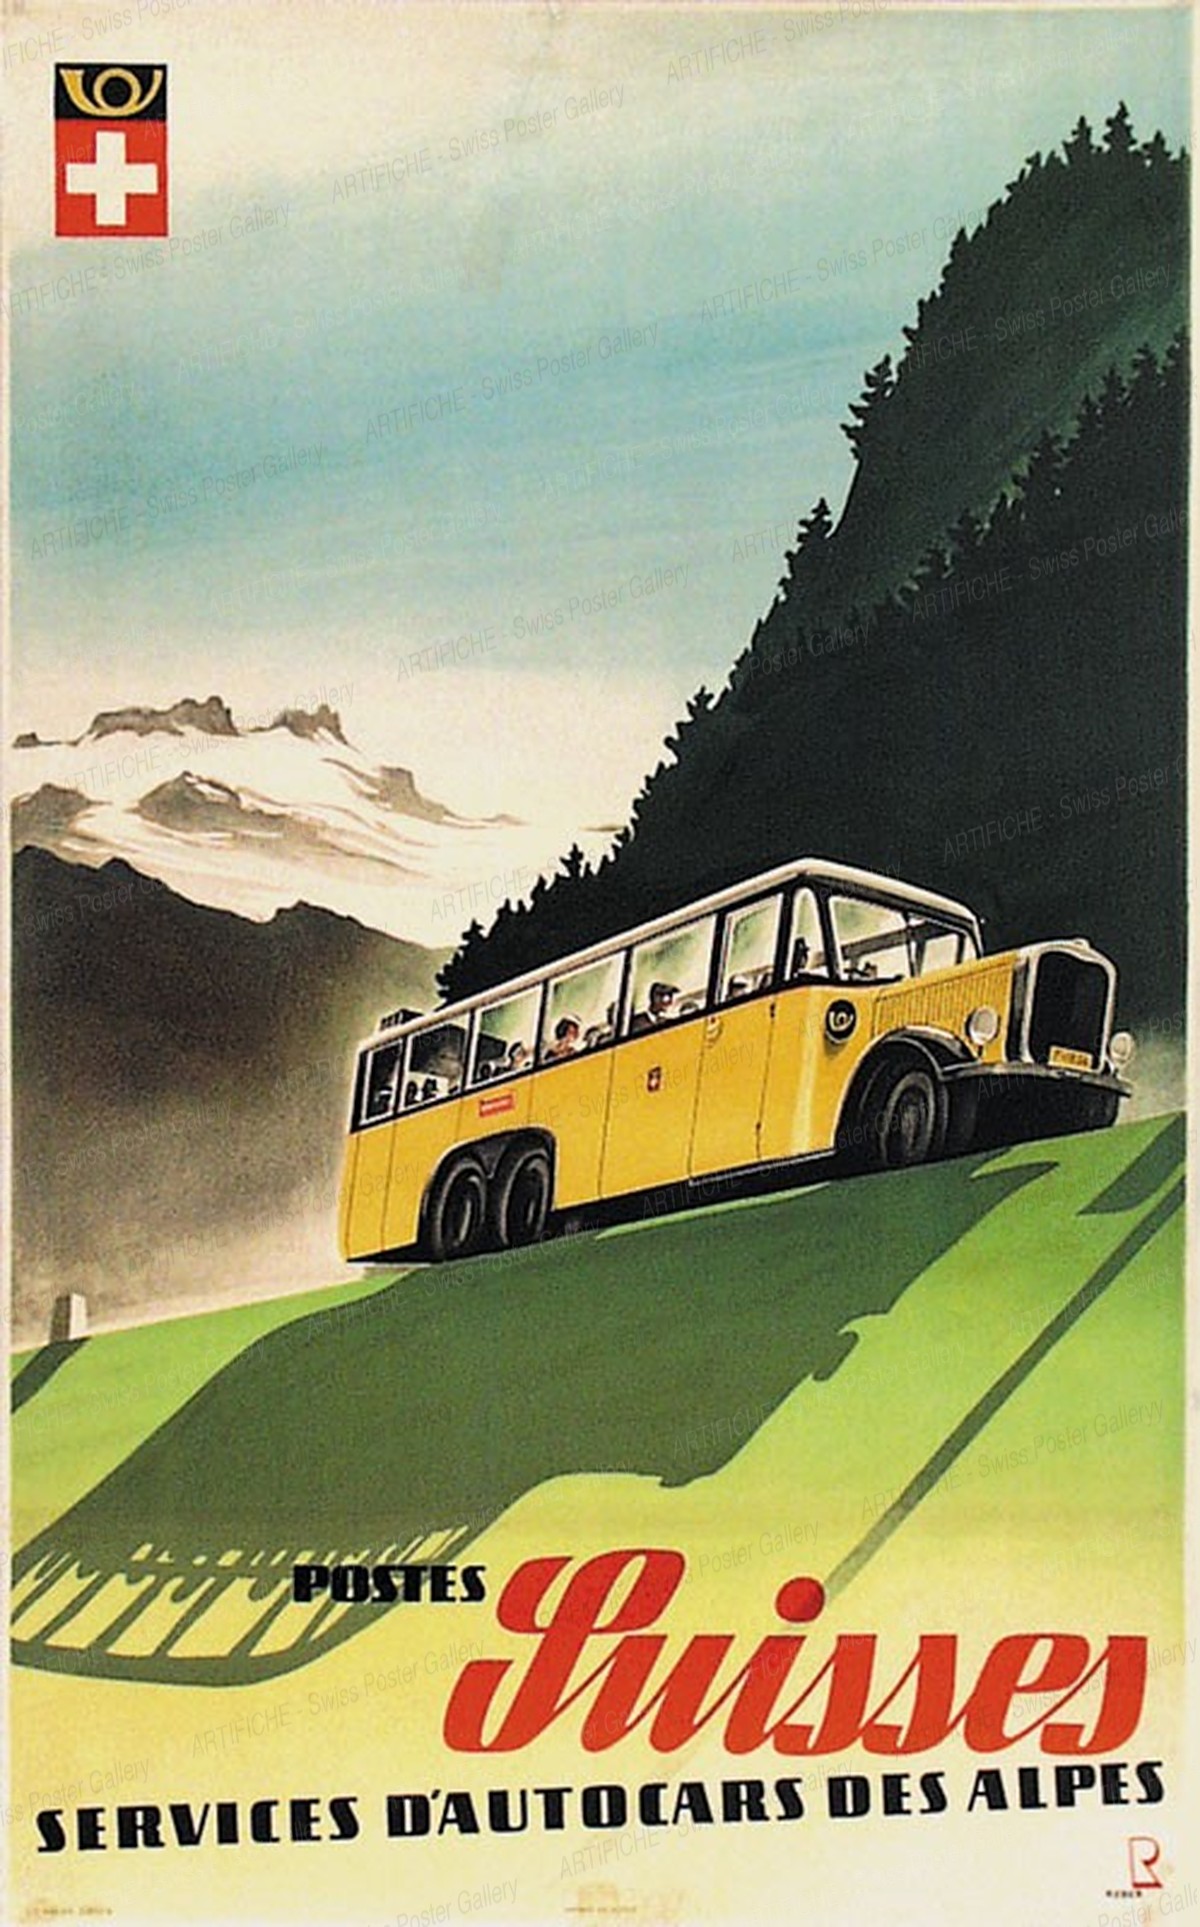 Postes Suisses – Services d’Autocars des Alpes, Bernhard Reber